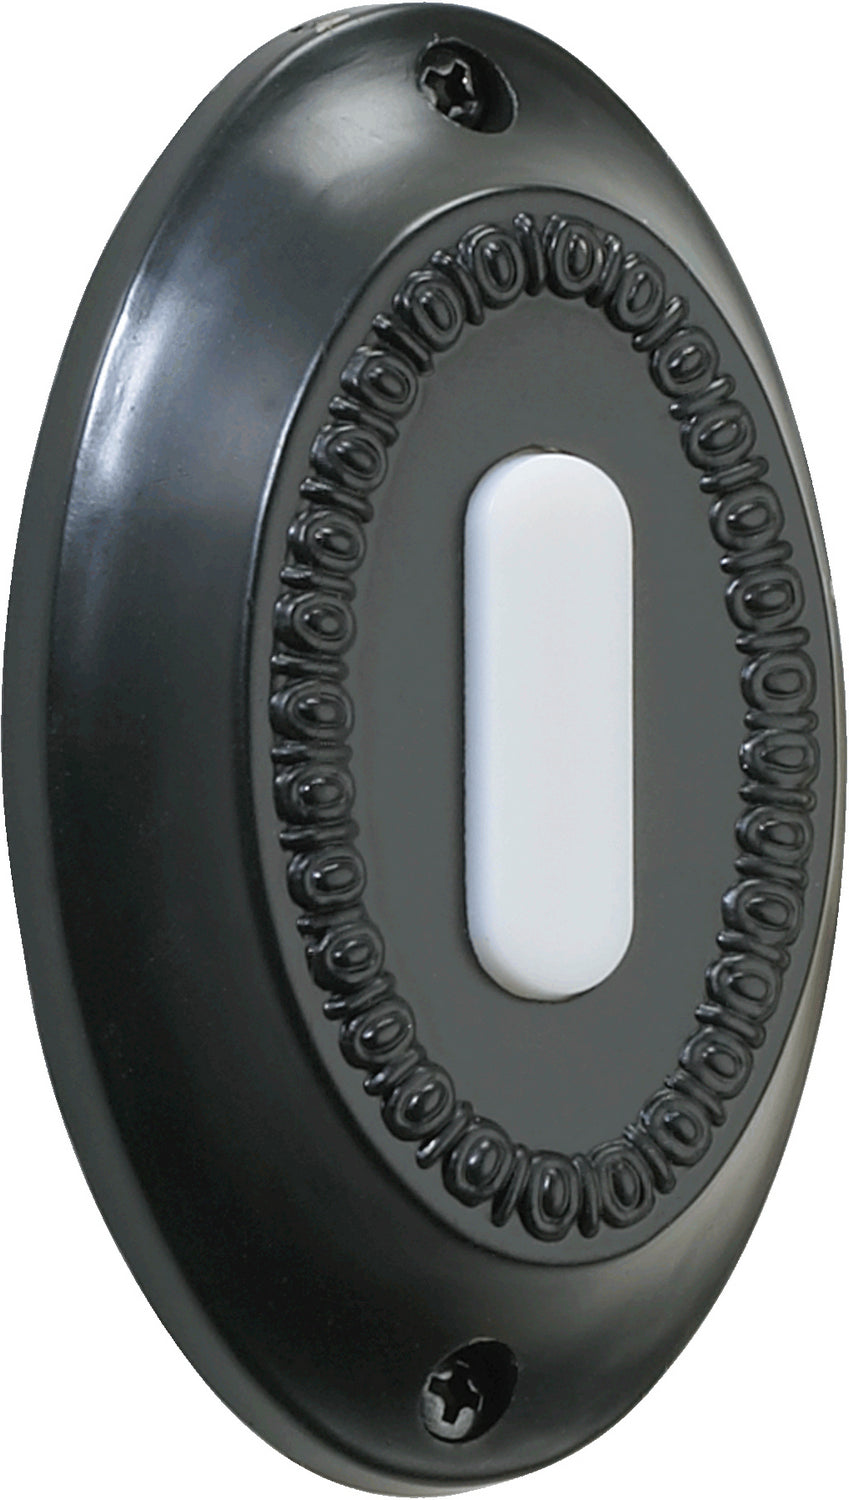 Quorum - 7-307-95 - Door Chime Button - 7-307 Door Buttons - Old World